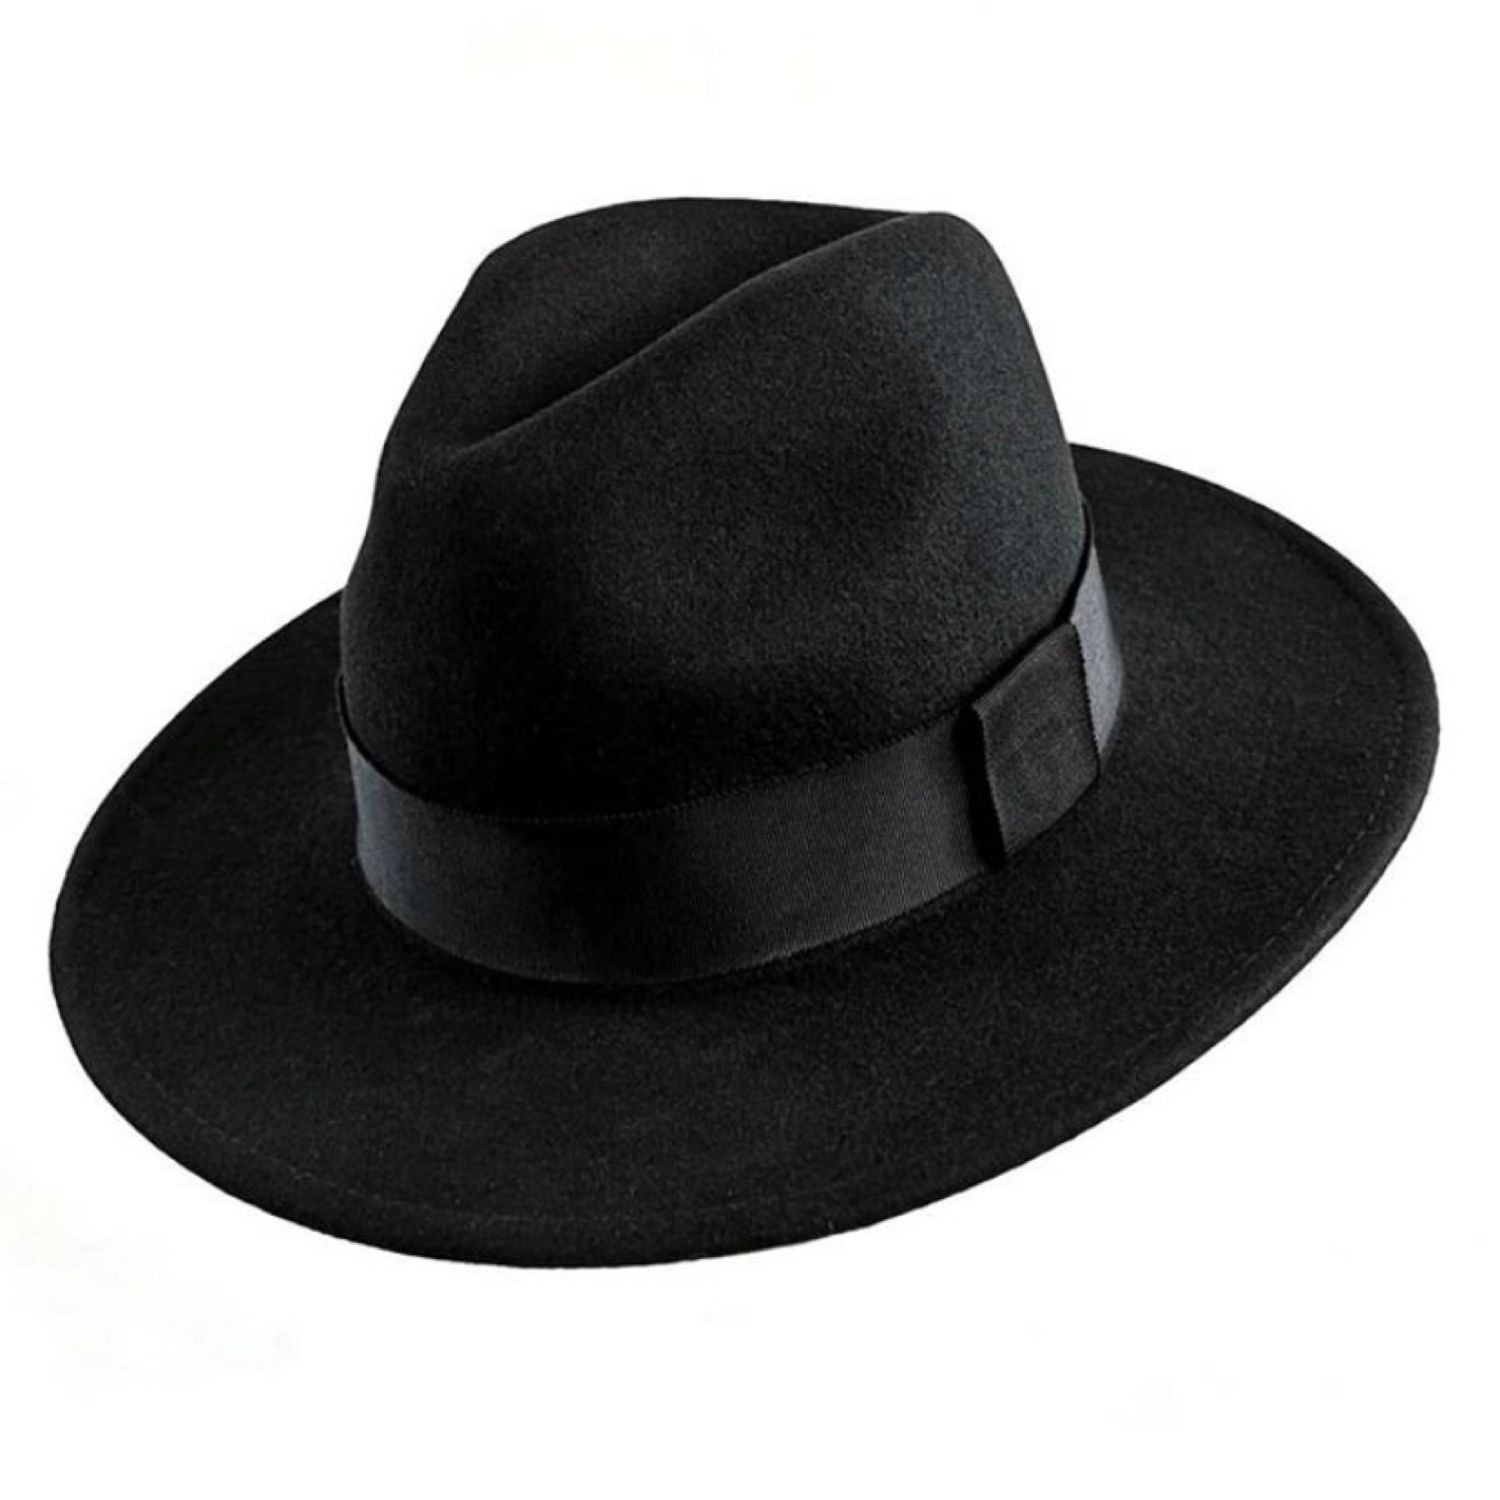 Купить шляпу мужскую с полями. Феттер ткань шляпа мужская. Шляпа мужская Федора Монтгомери. Шляпа мужские валберис. Шляпа Федора мужская широкополая.